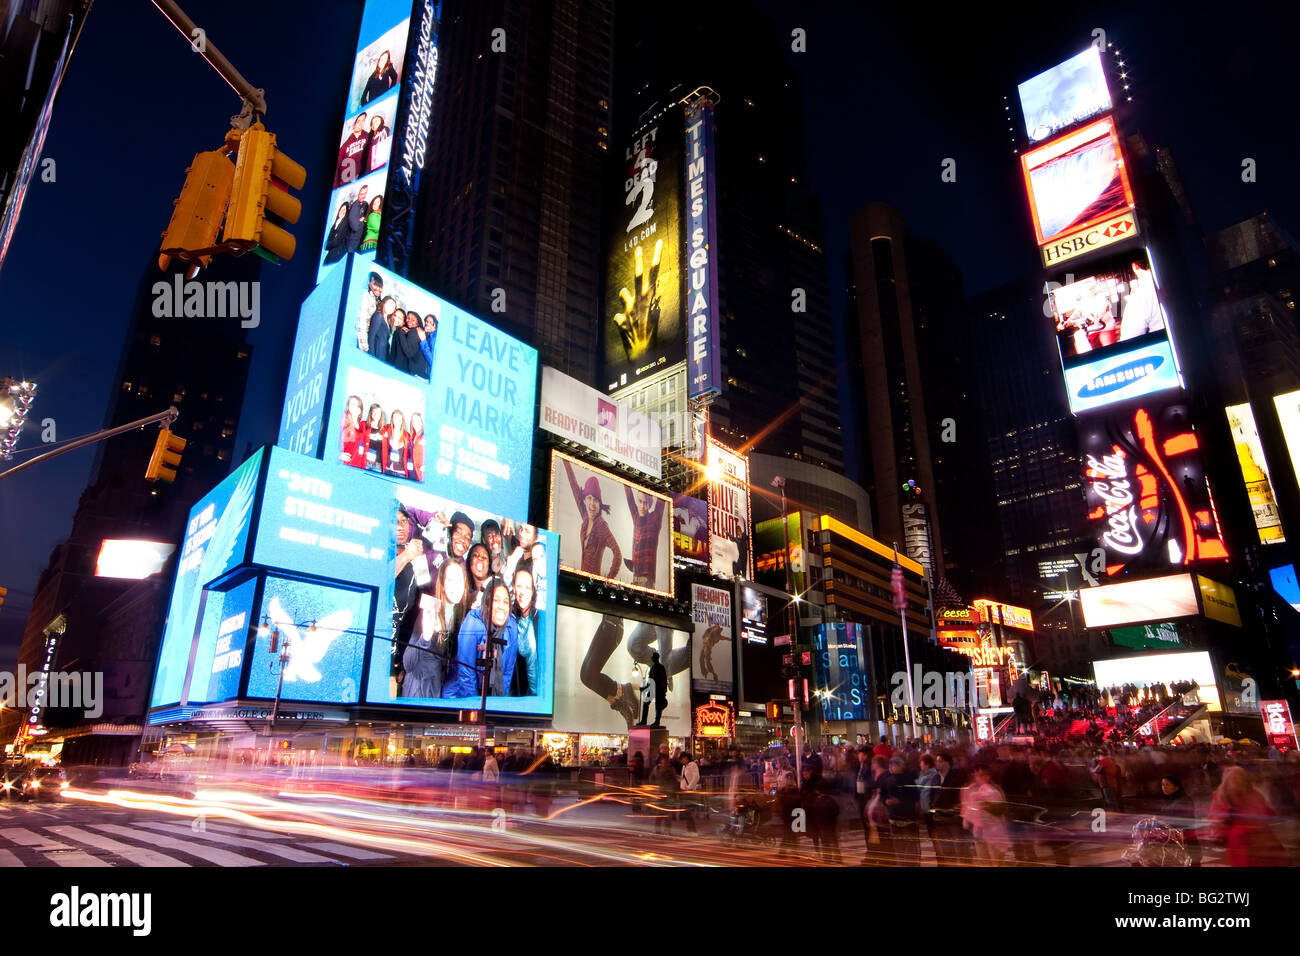 Scène de nuit de Broadway at Times Square à Manhattan (New York City) avec tous les allume les panneaux et publicités. Banque D'Images